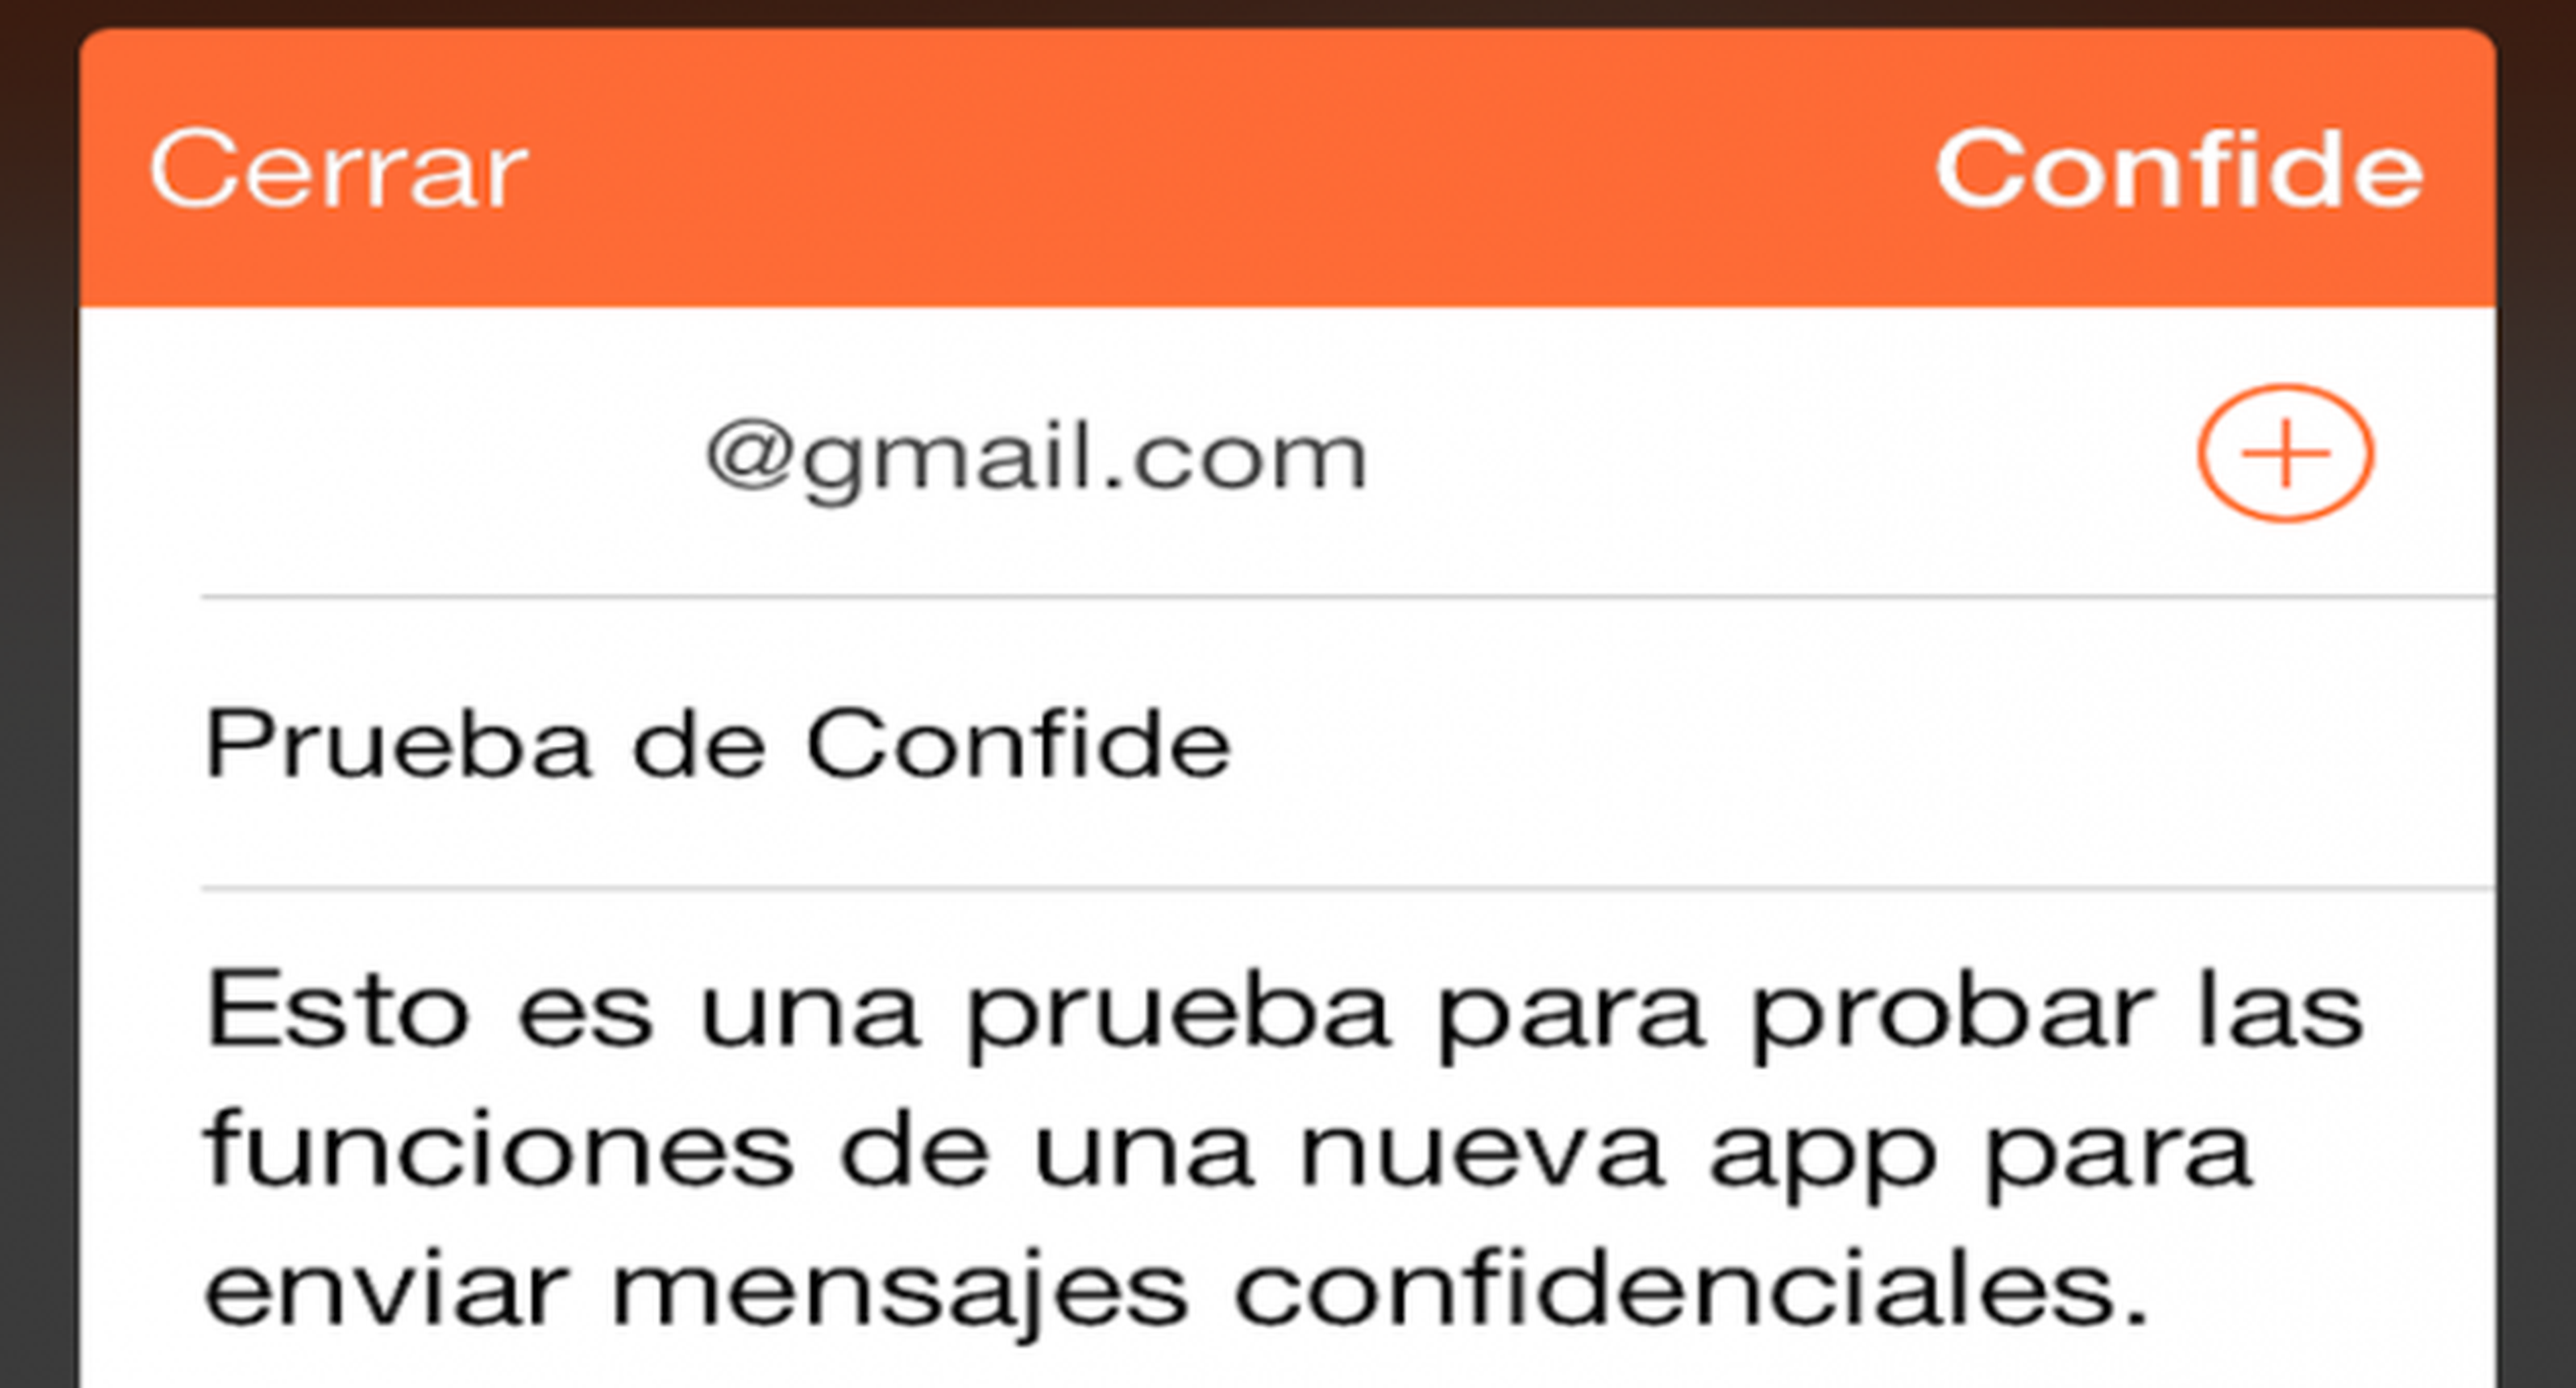 Confide, una app que envía mensajes que se autodrestuyen